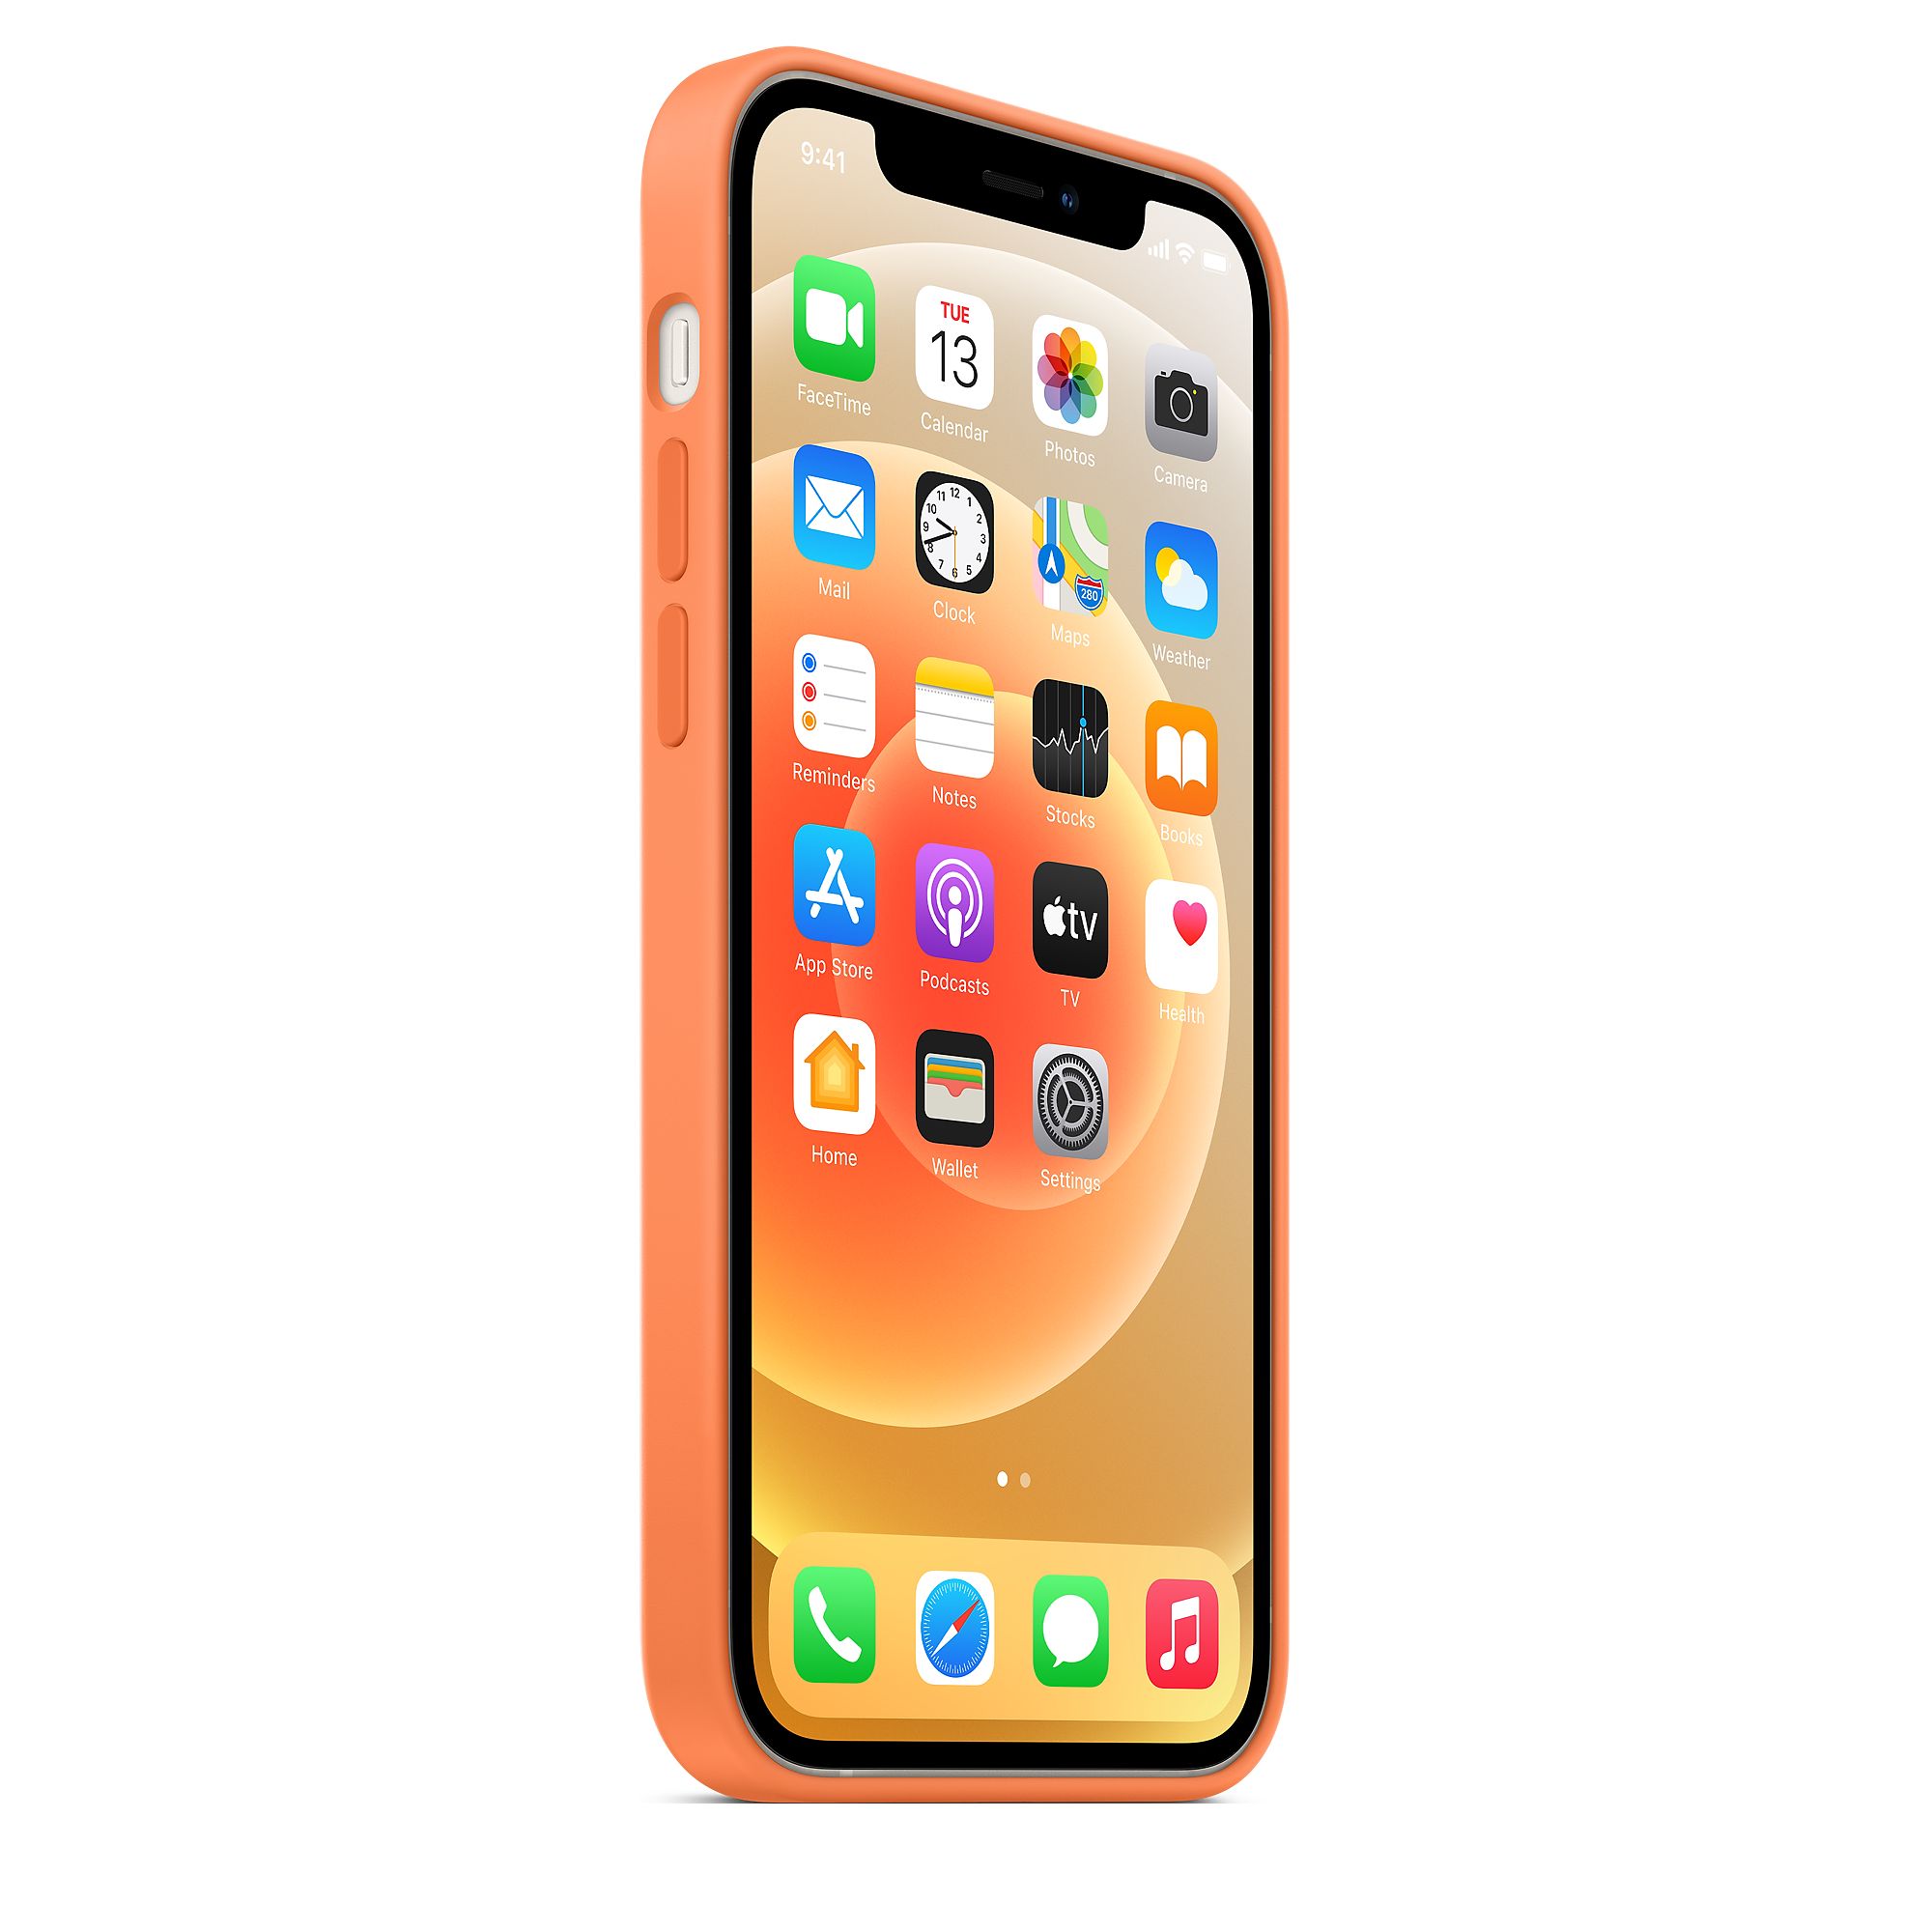 Silicon Case for iPhone 12 Pro Max (Kumquat)